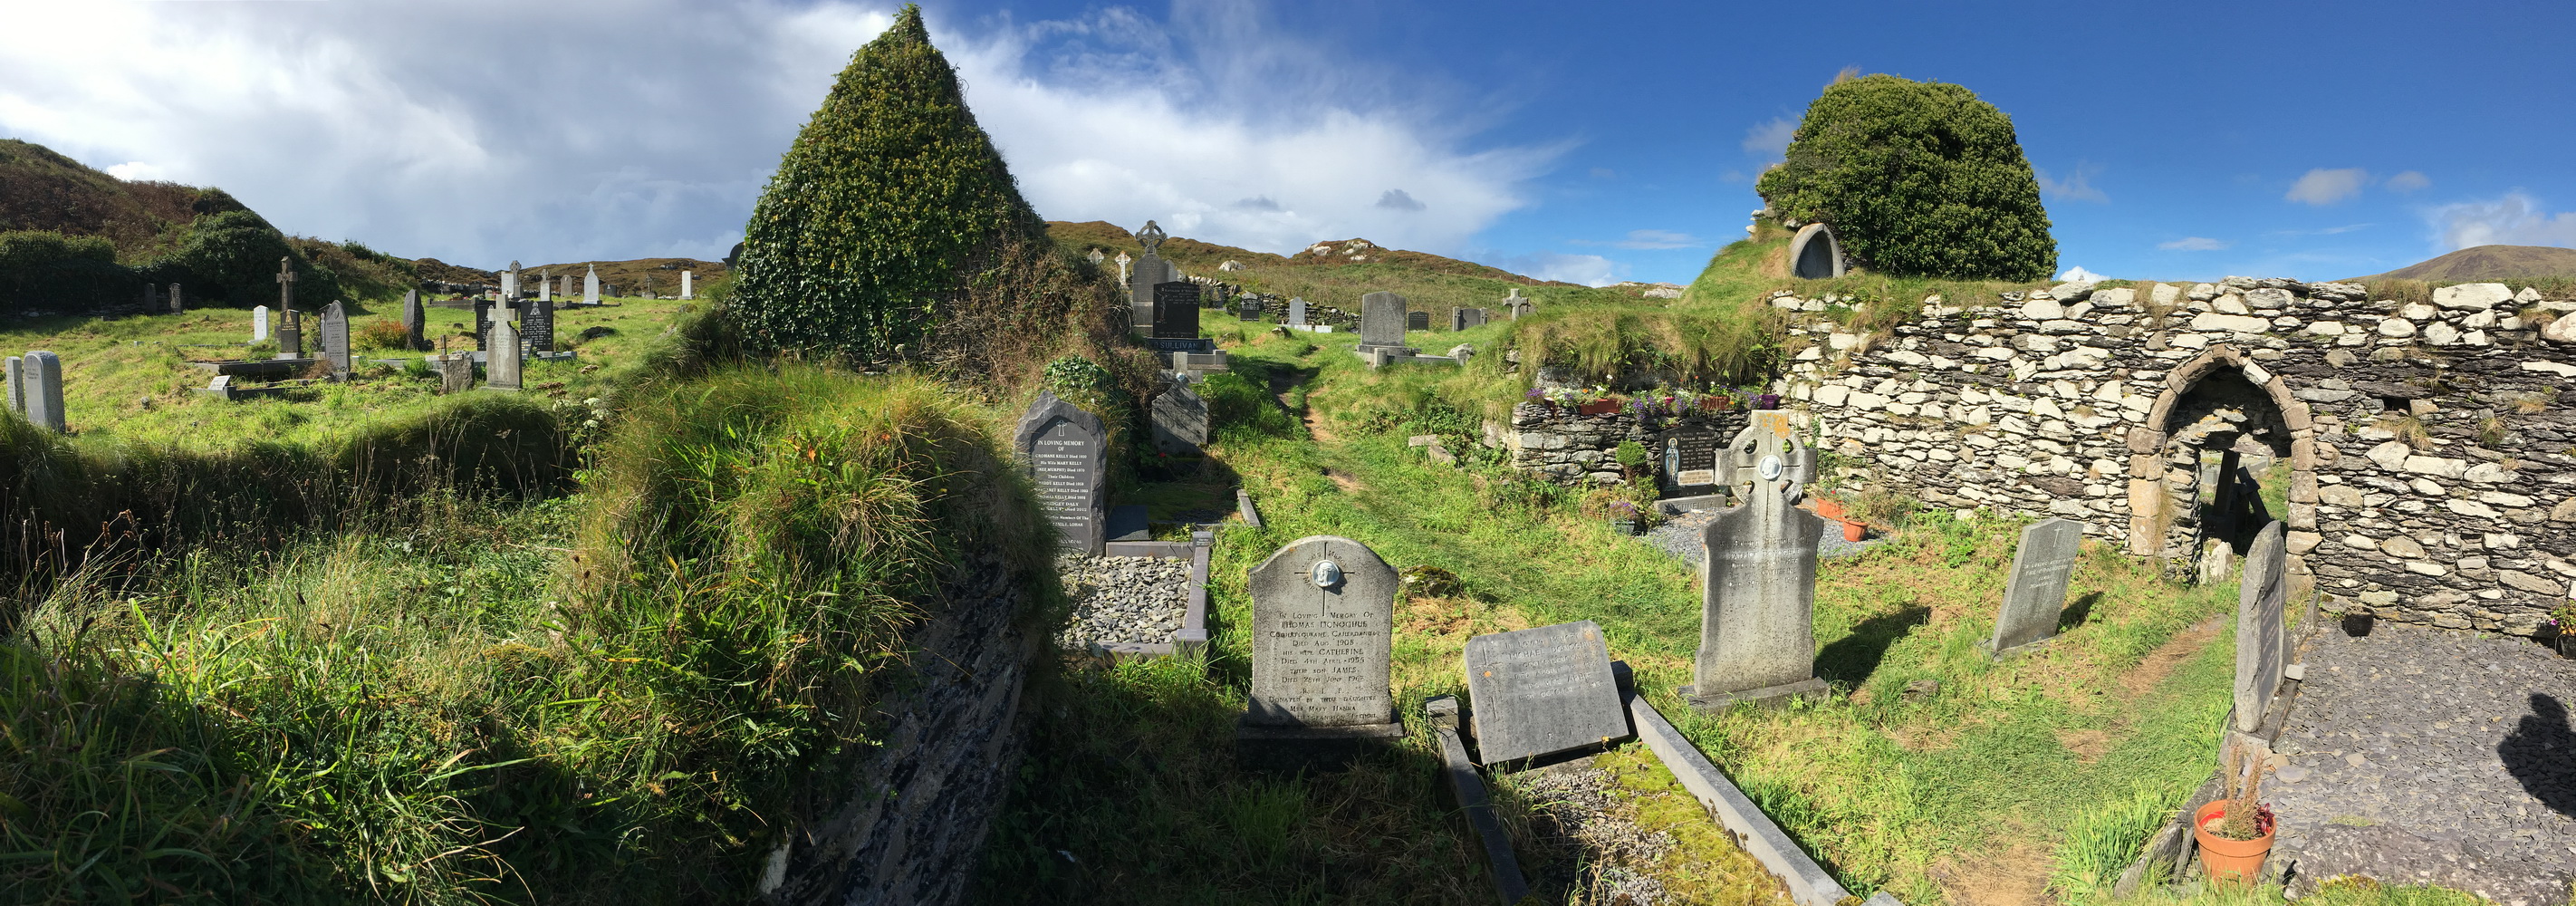 Derrynane Abbey Cemetery in Kerry Ireland